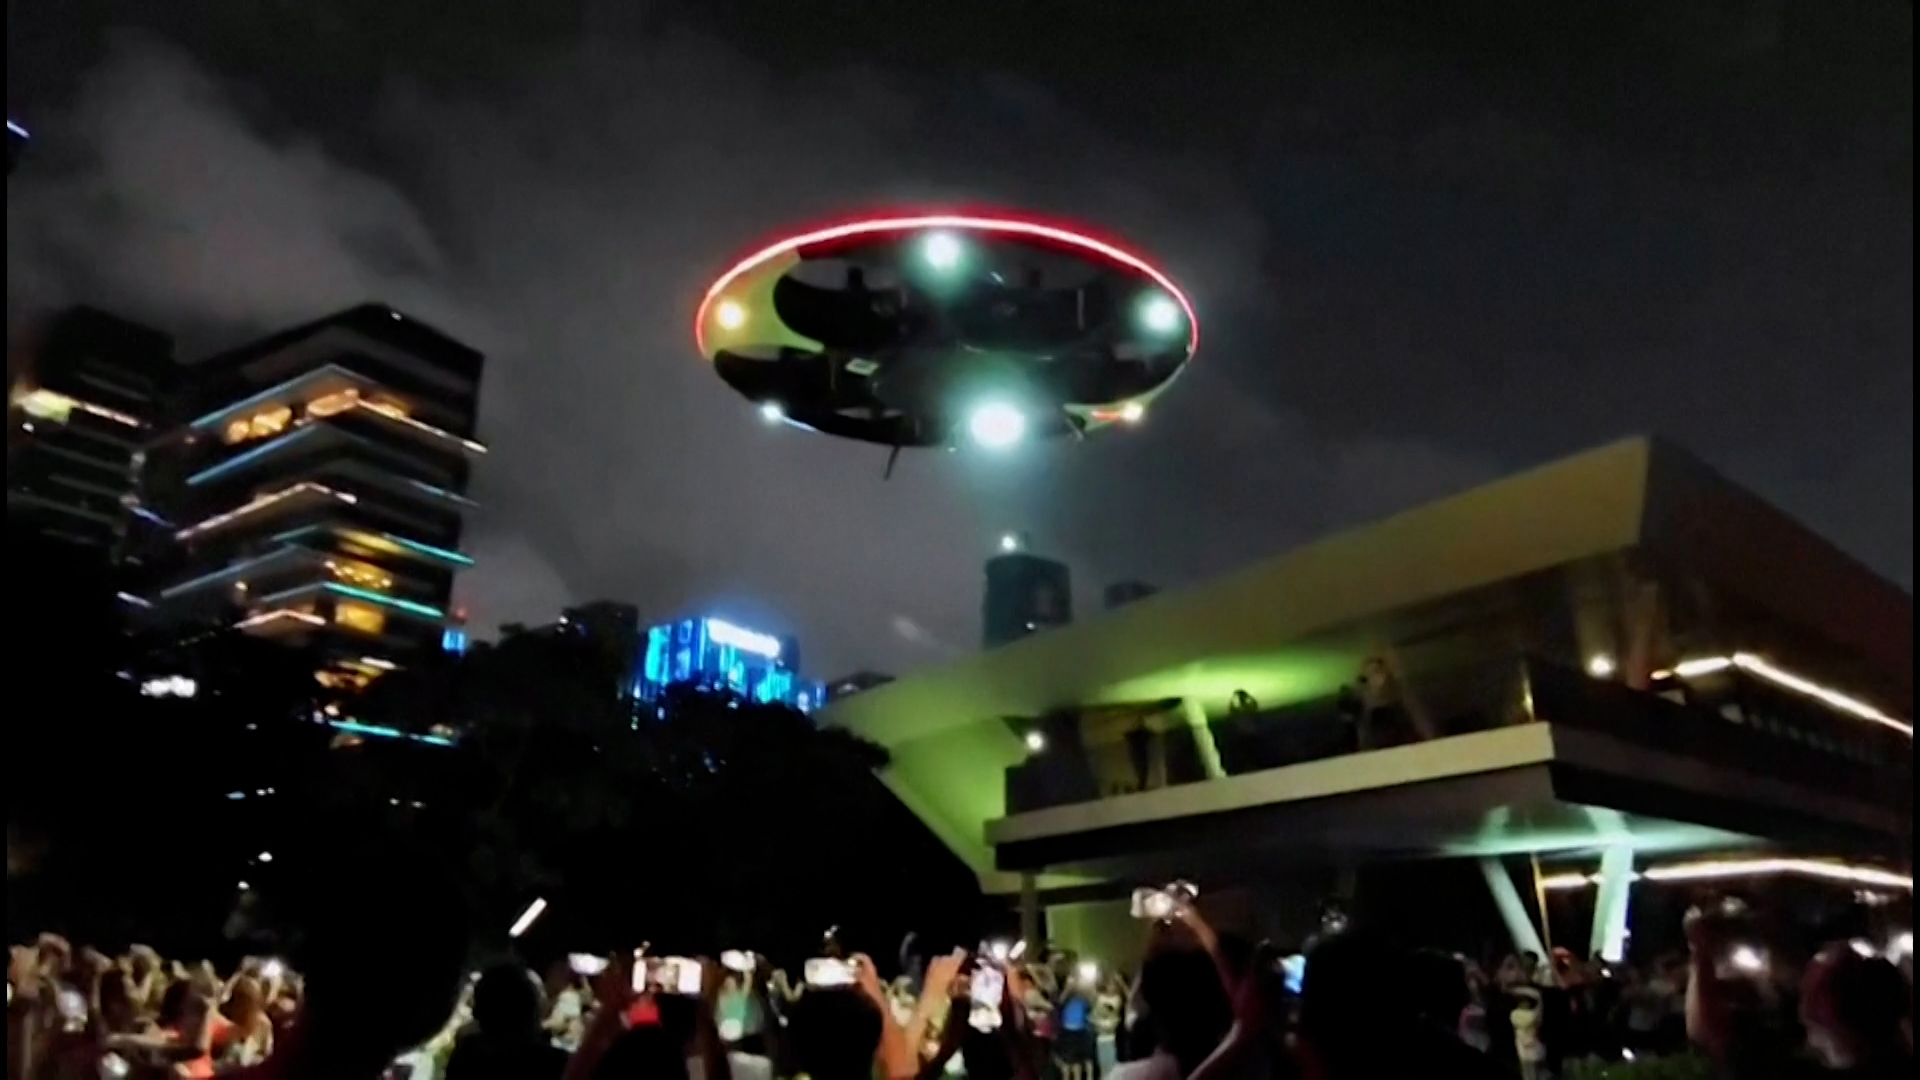 Ιπτάμενος δίσκος ανθρώπινης κατασκευής στον ουρανό της Κίνας (video)